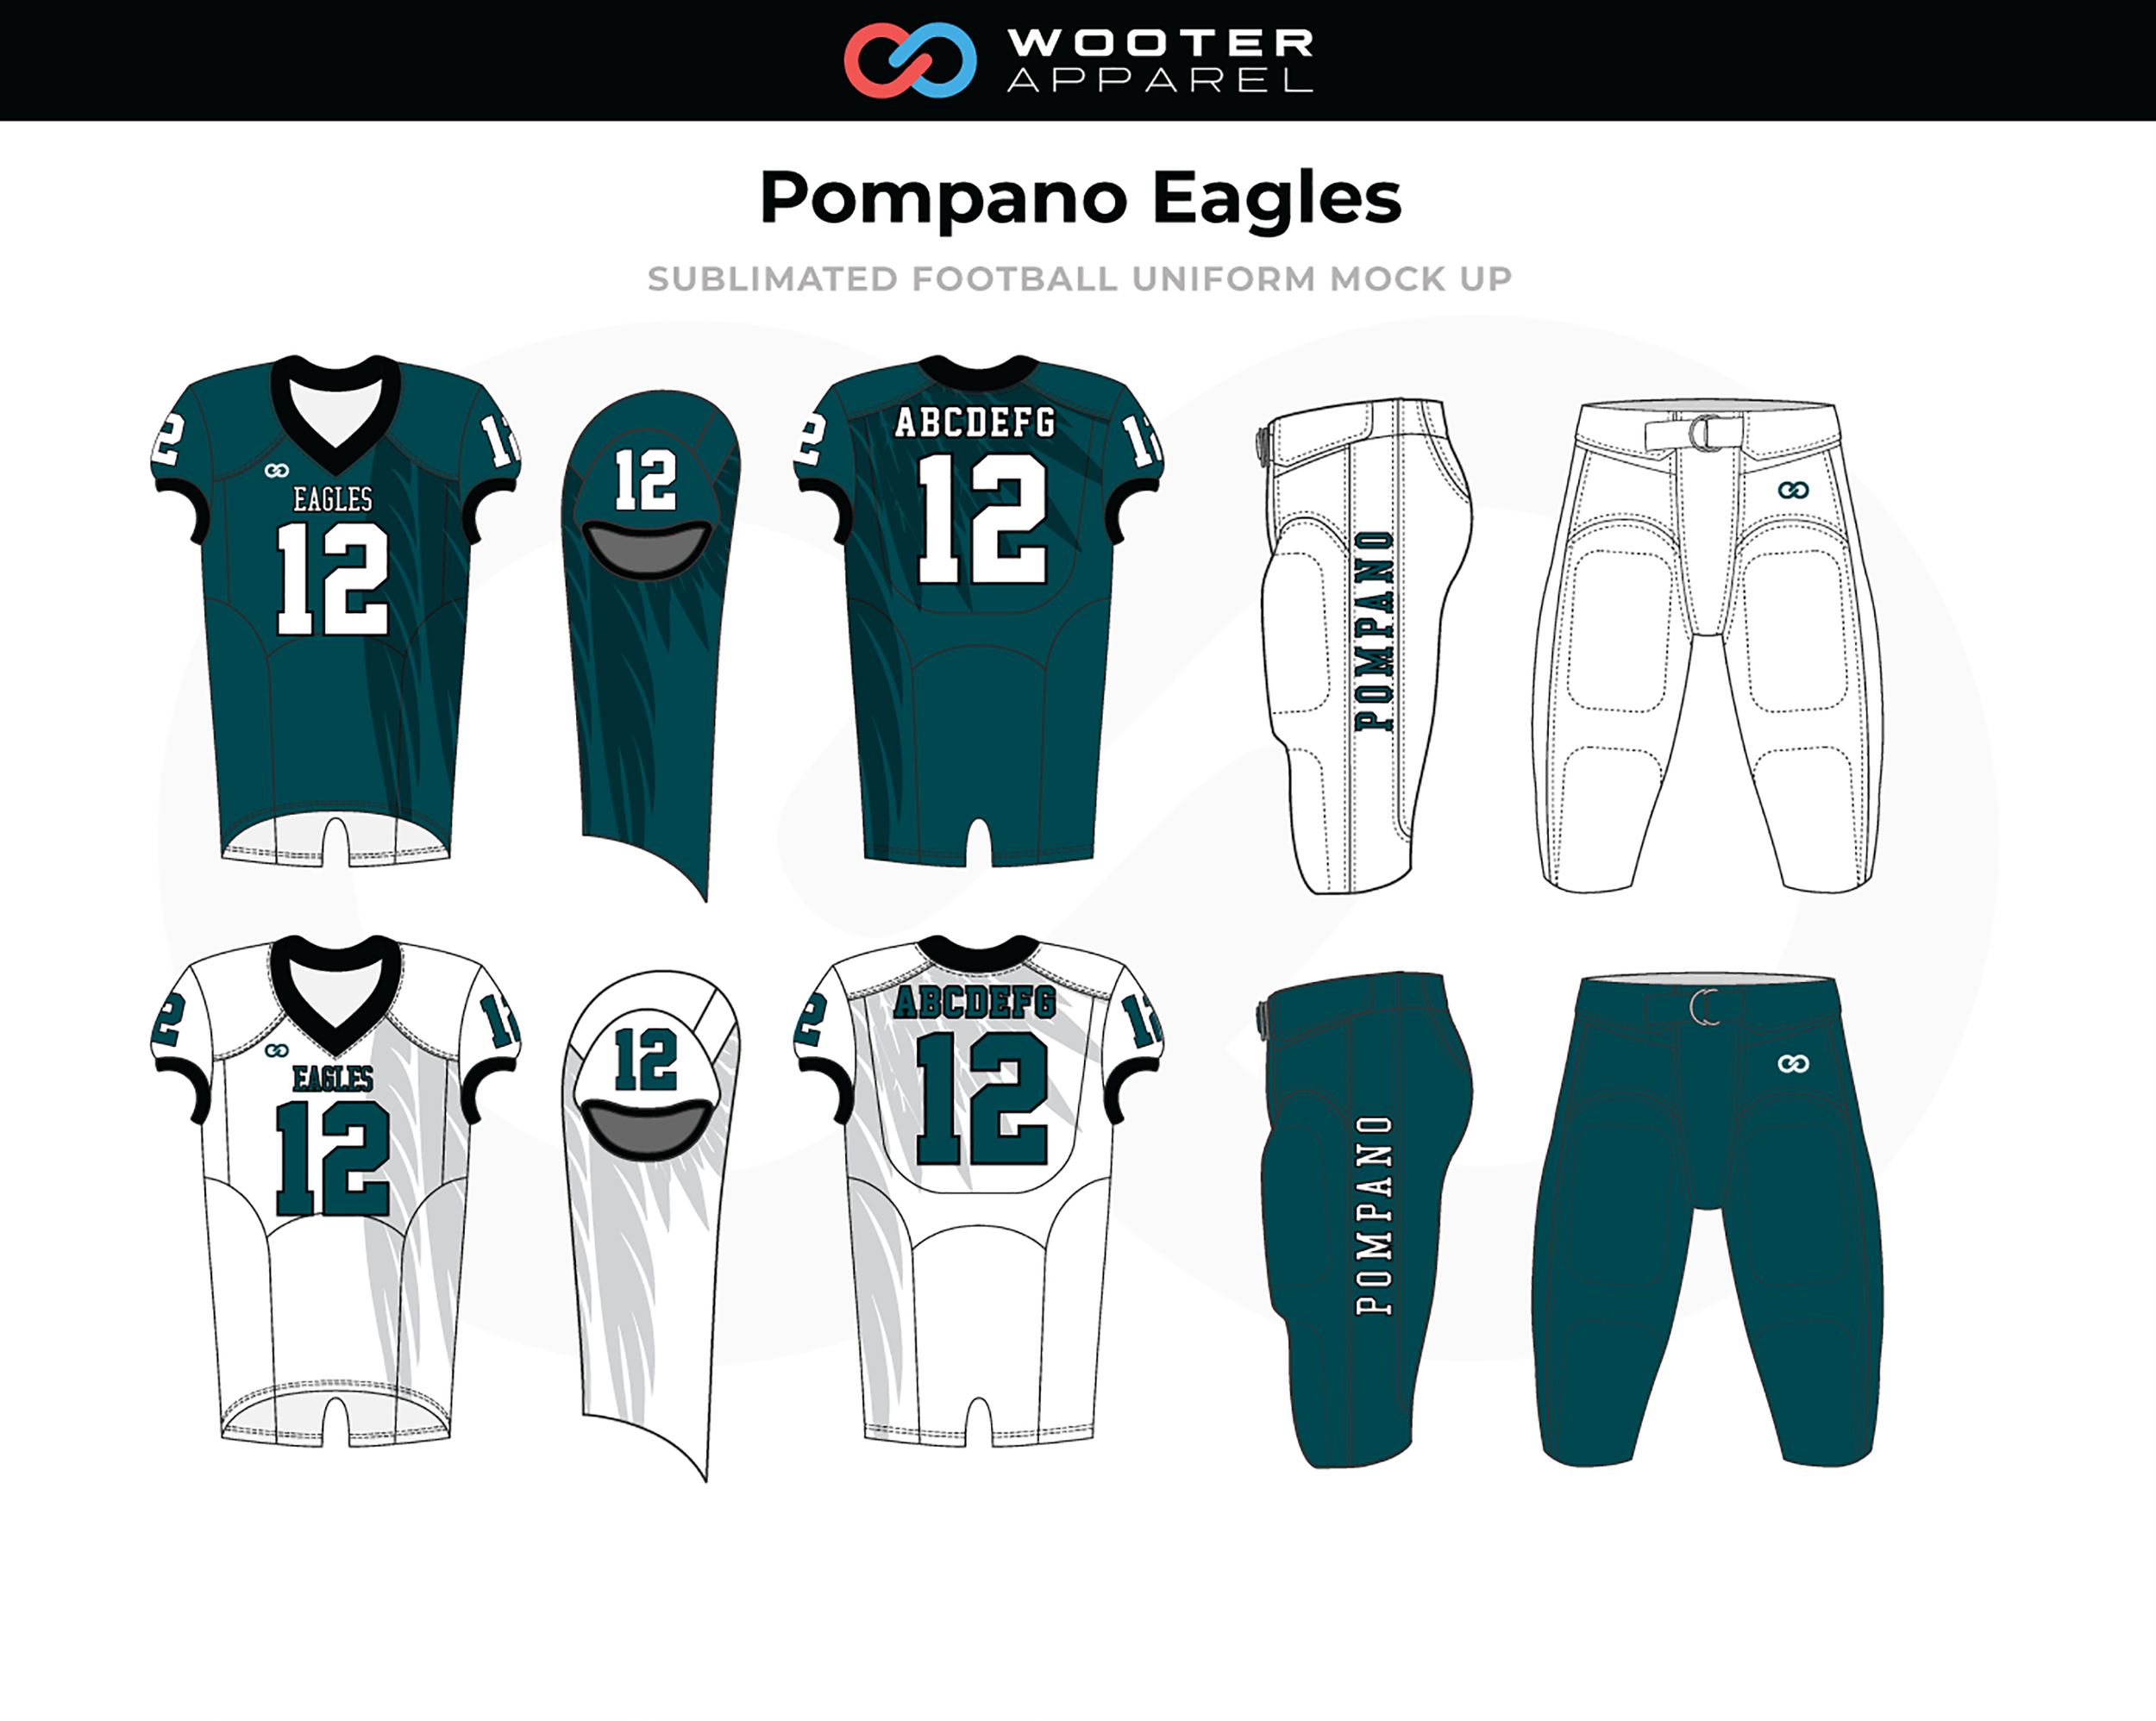 Acechar carril mínimo Custom Football Uniform Designs | Football Uniform Designer | Wooter Apparel